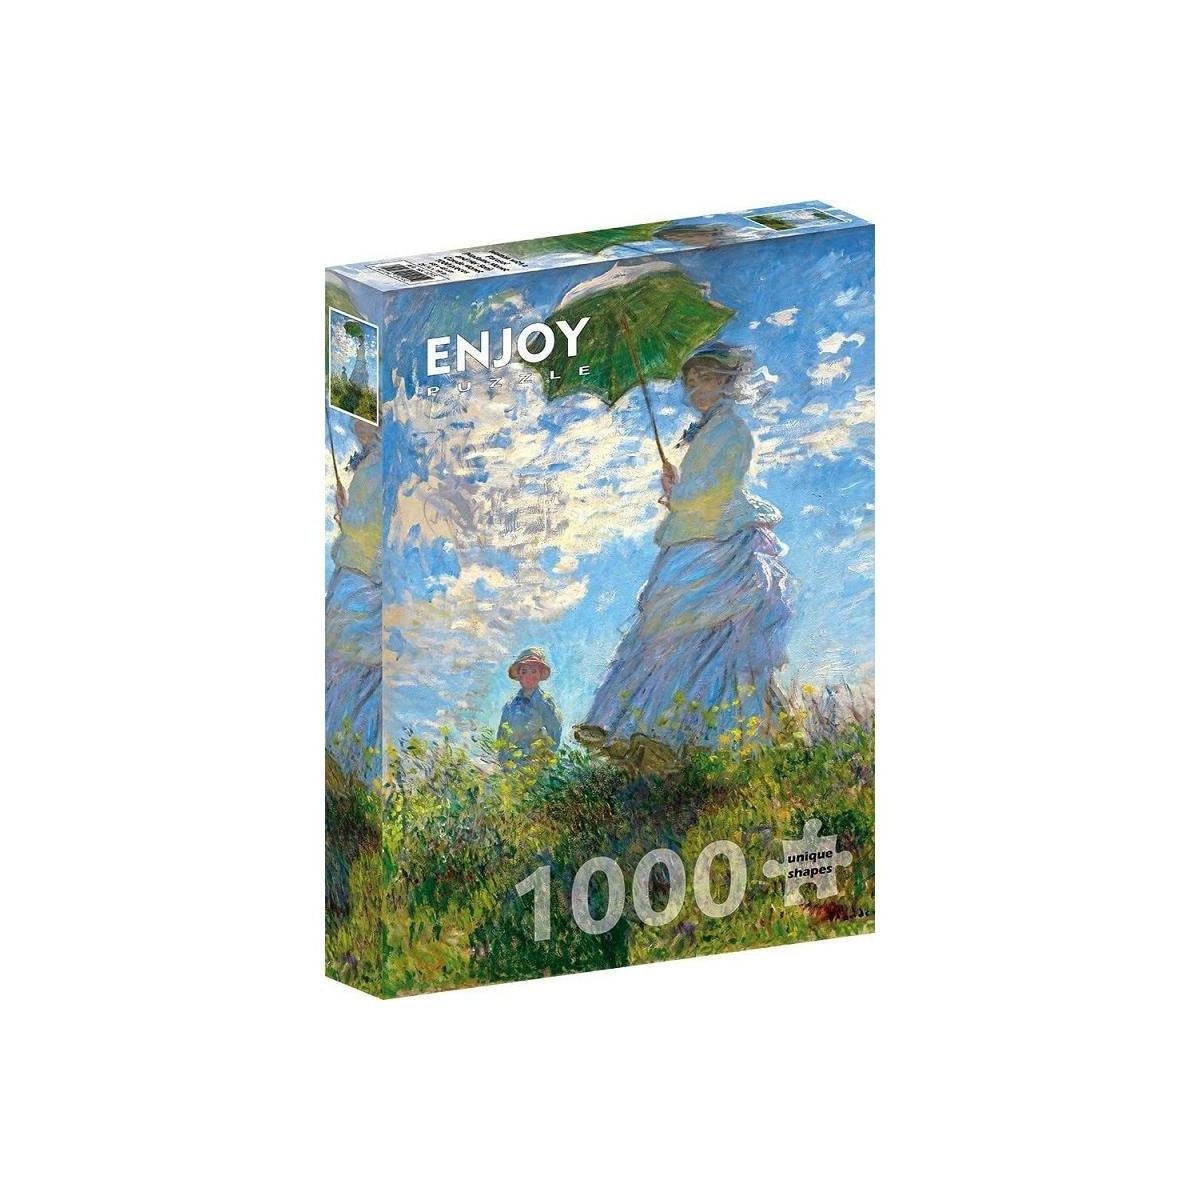 mit Frau Puzzle Monet: Puzzleteile - Sonnenschirm,..., ENJOY-1215 Puzzle ENJOY 1000 Claude